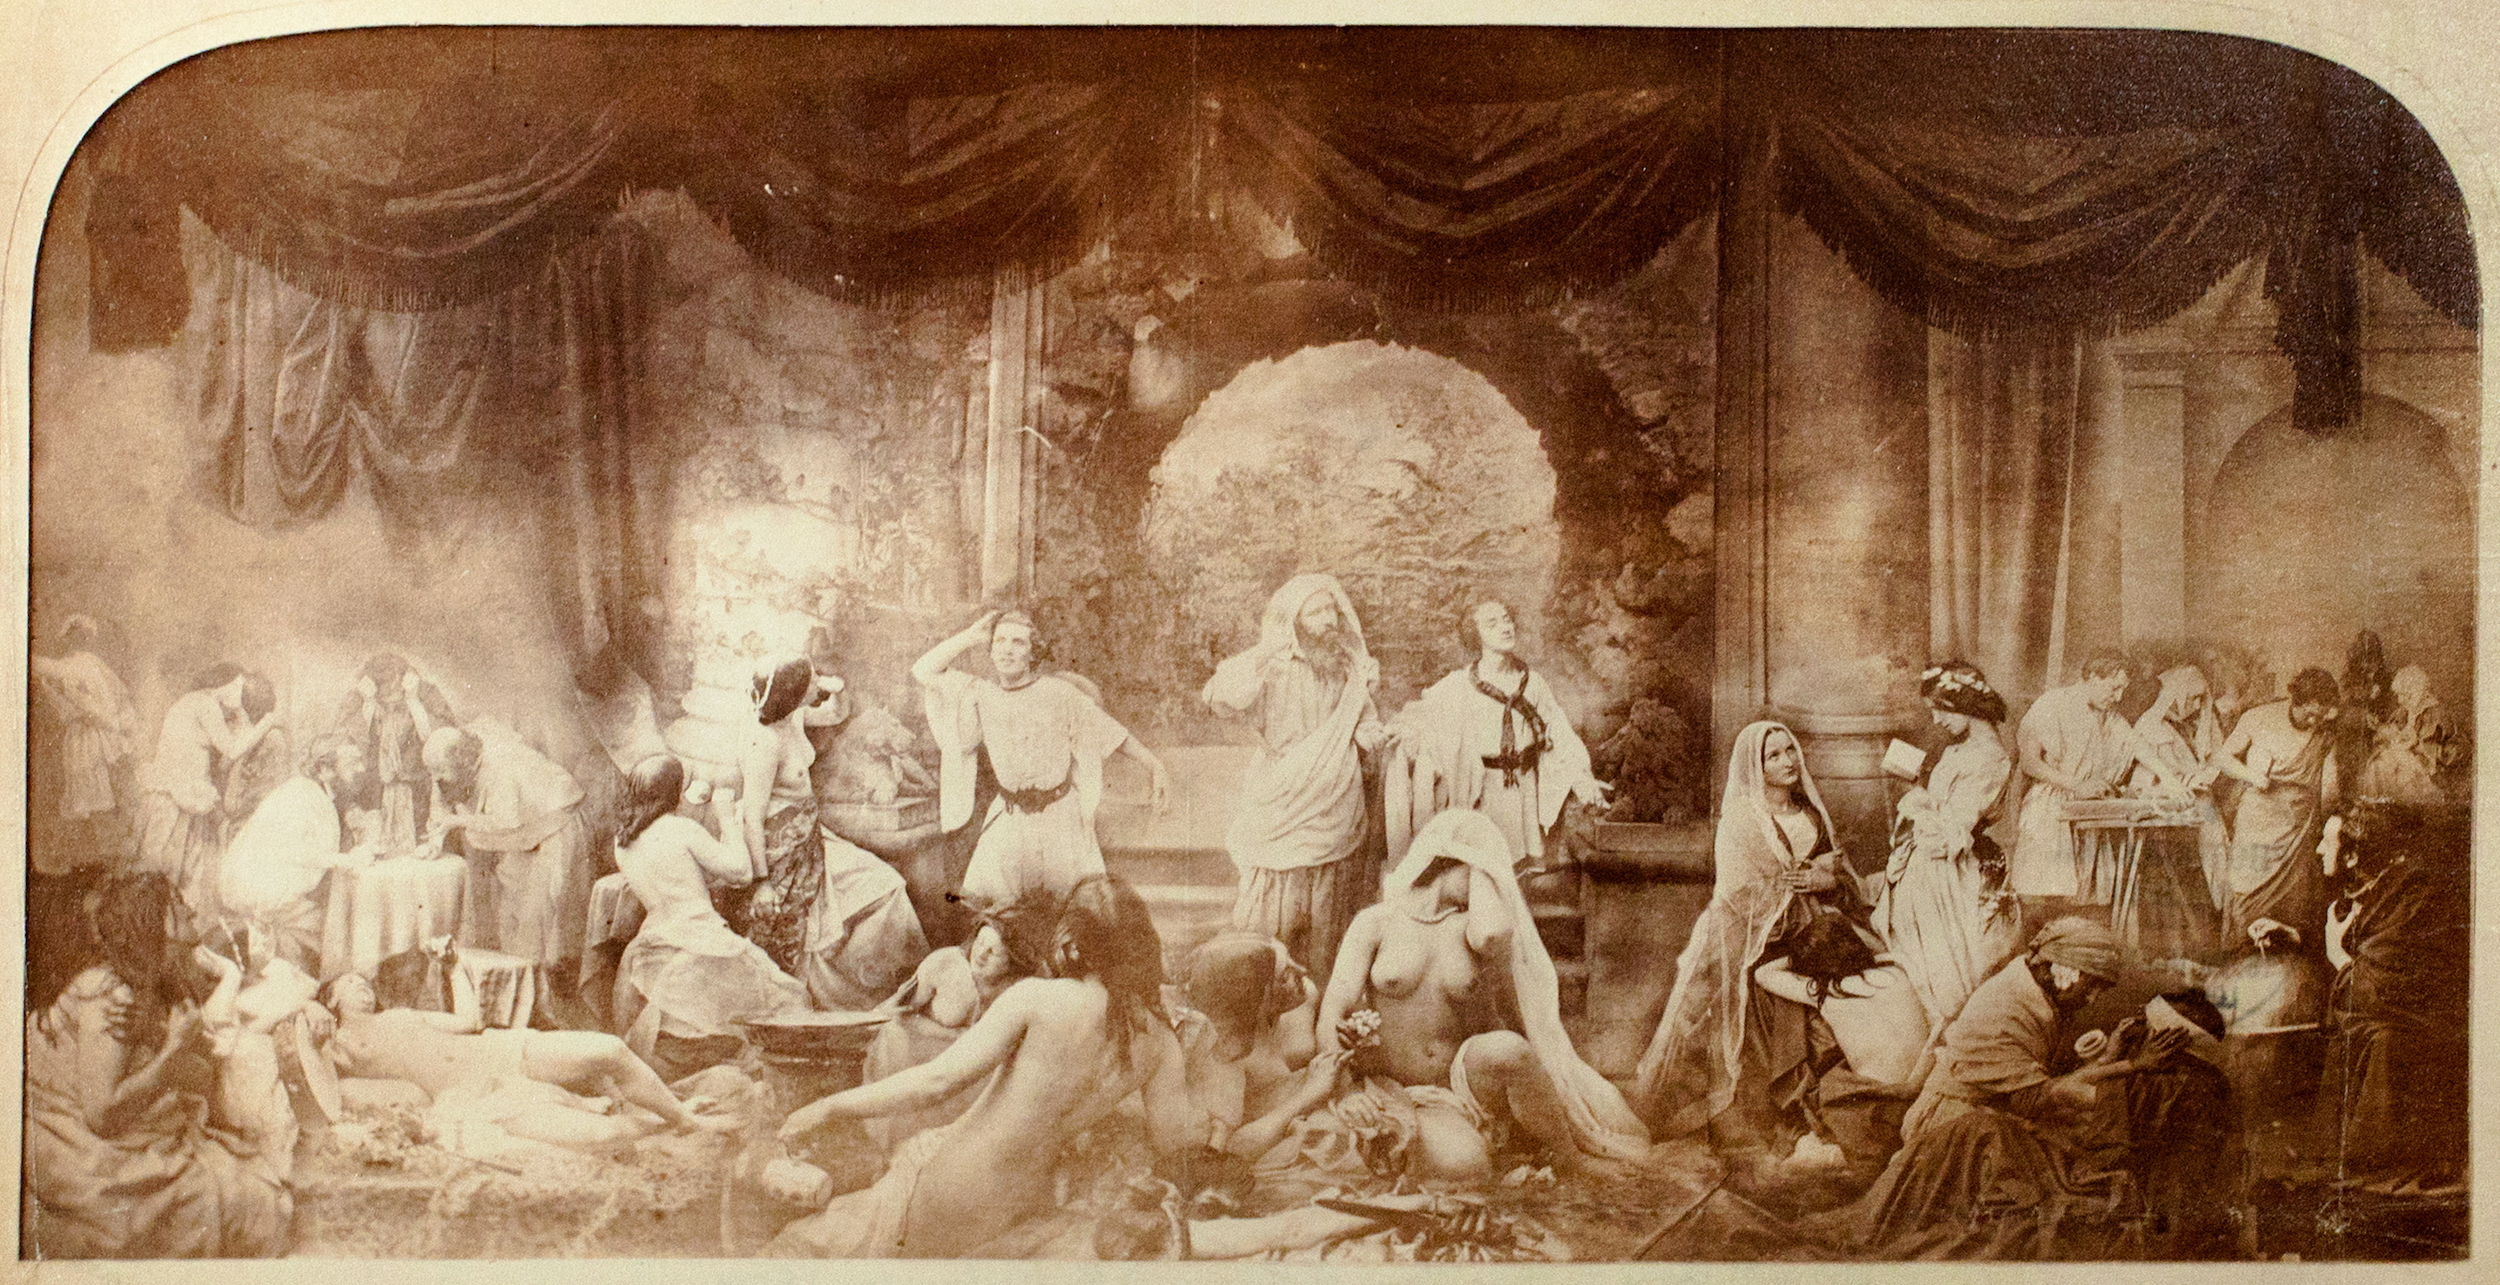 1850年至1935年的合成影像——早期摄影史 by 奥斯卡 古斯塔夫·雷兰德 - 1858 